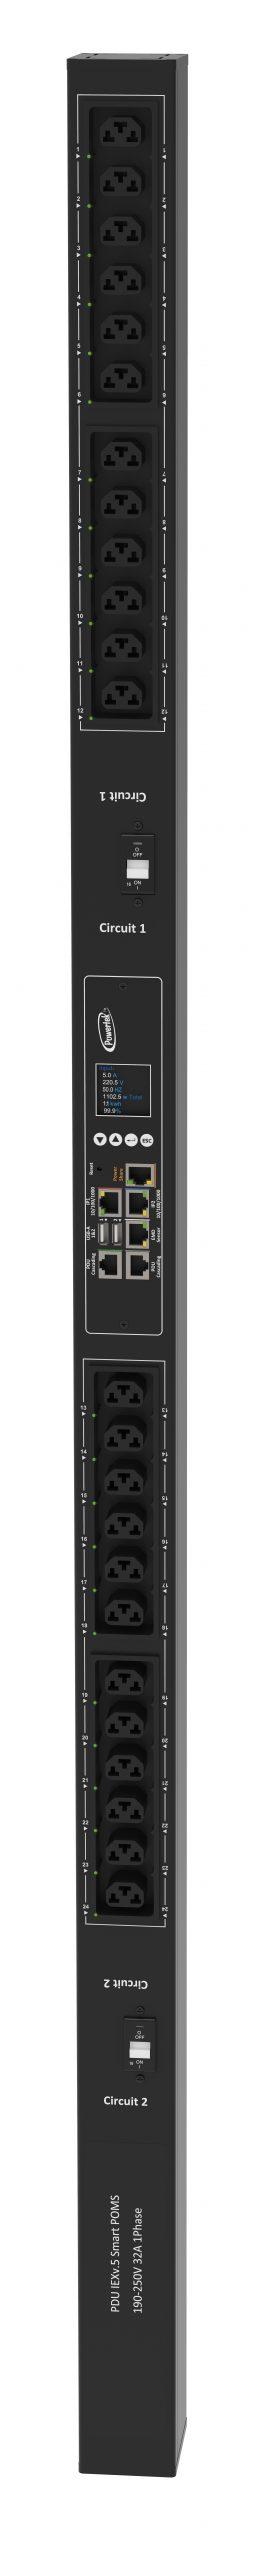 Powertek Intelligent PDU 230V, 1 fase, 32amp, låsning af power kabler C13/C19 kombination i samme udtag, 24 udtag redundant netværks mulighed,  OLED display, overvågning af  sikringer